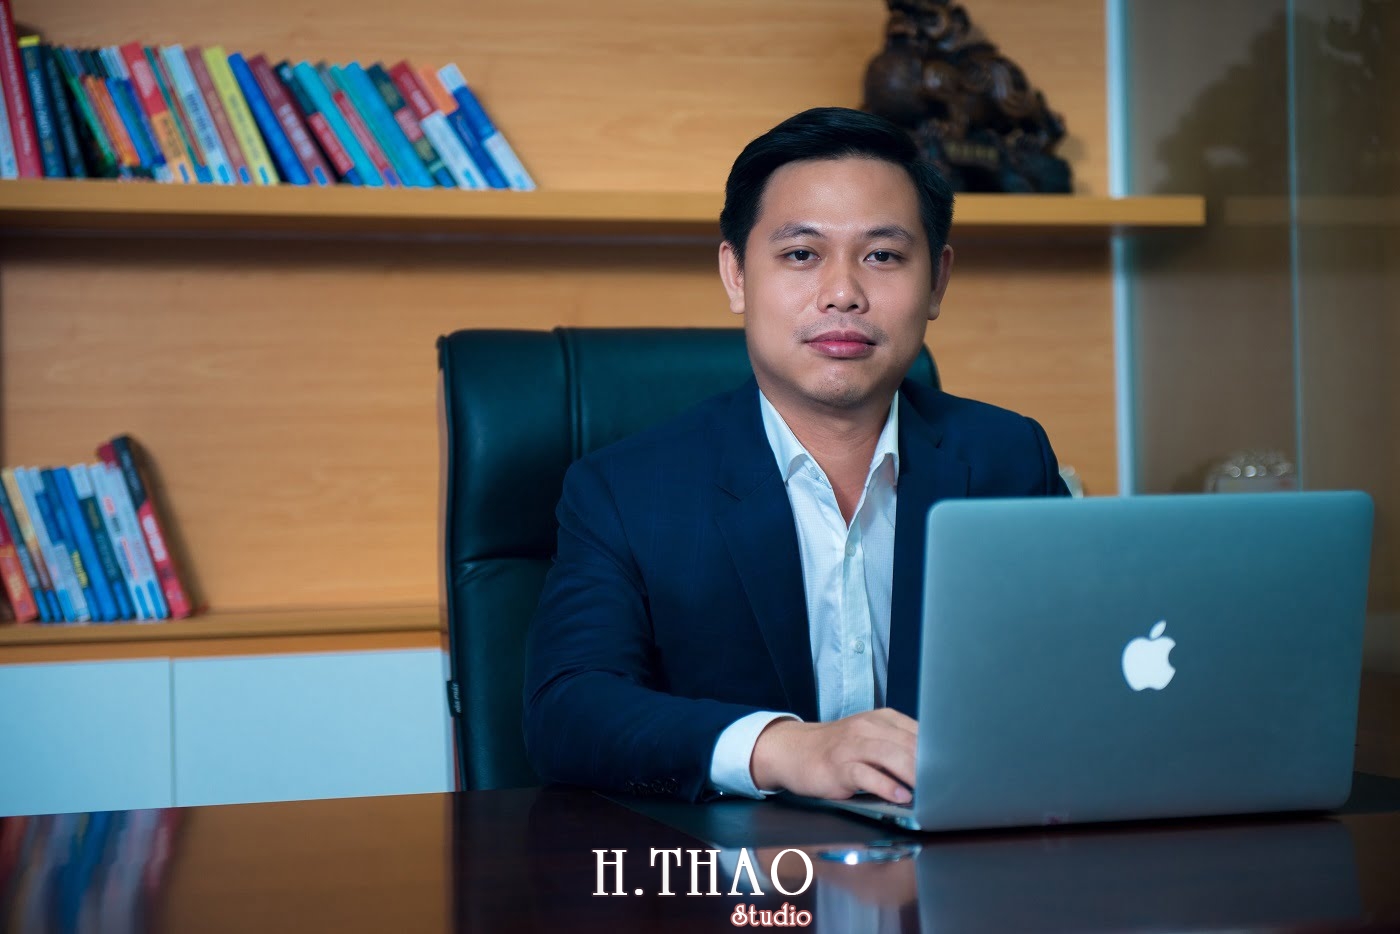 Phu Hung Land 78 min - 5 concept chụp ảnh doanh nhân sang trọng nhất hiện nay - HThao Studio